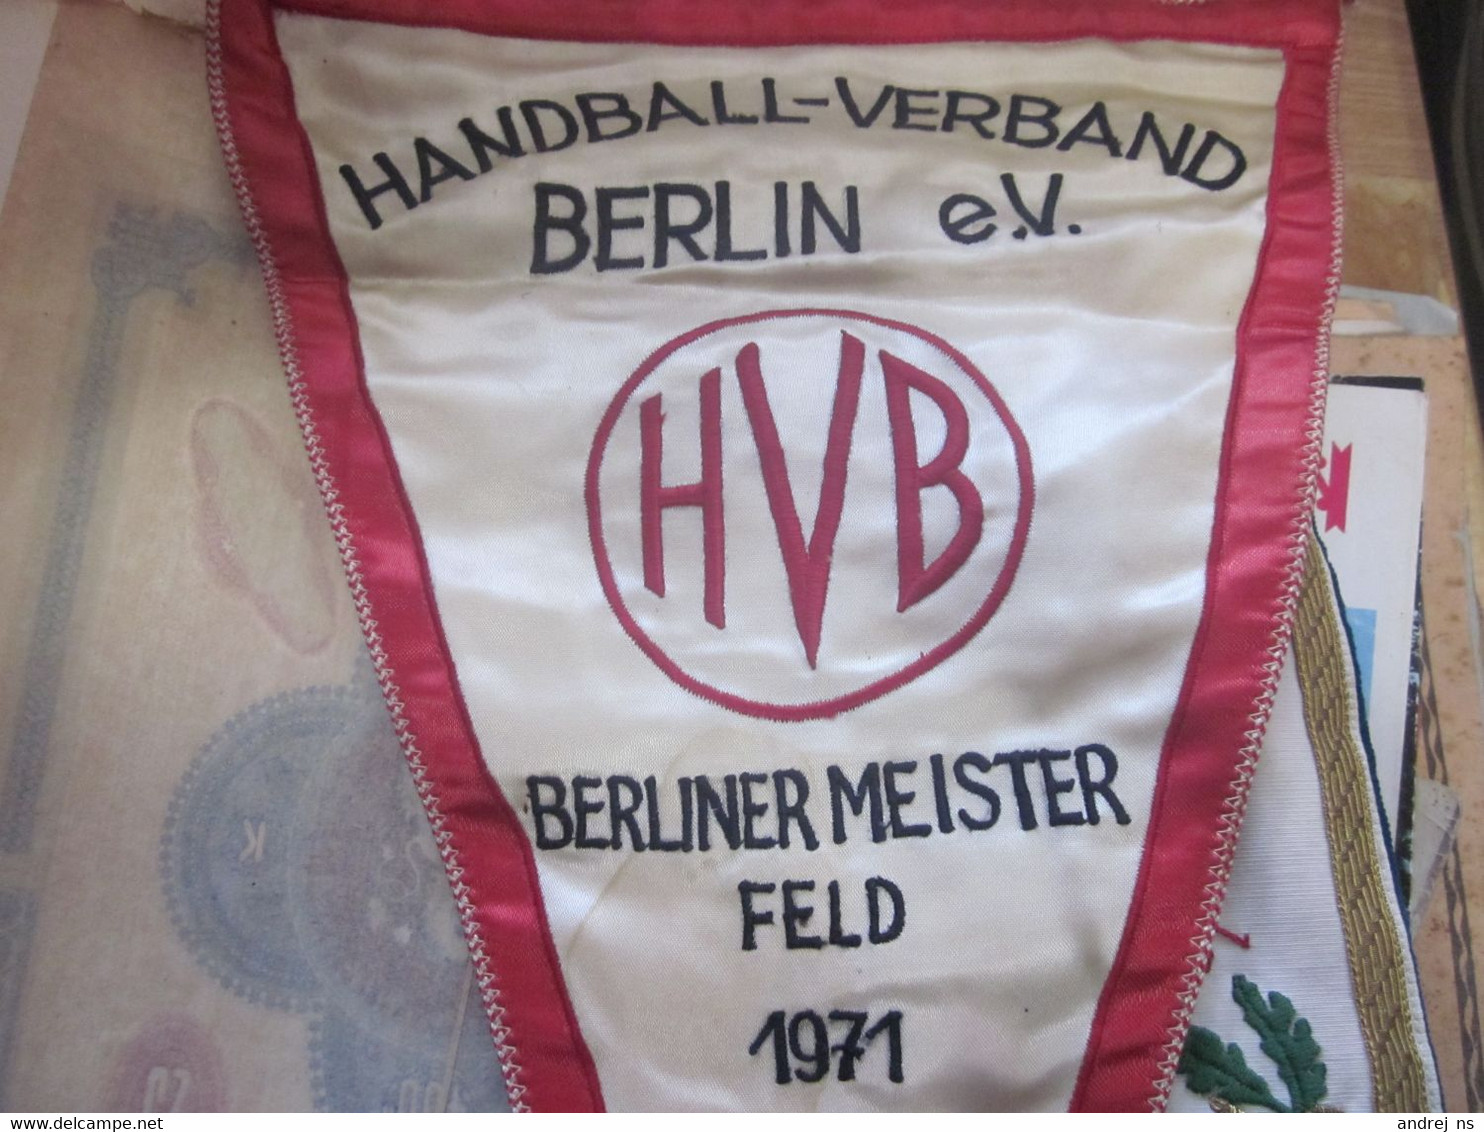 Flags Handball - Verband Berlin E V H V B Berliner Meister Feld 1971 Big - Handball